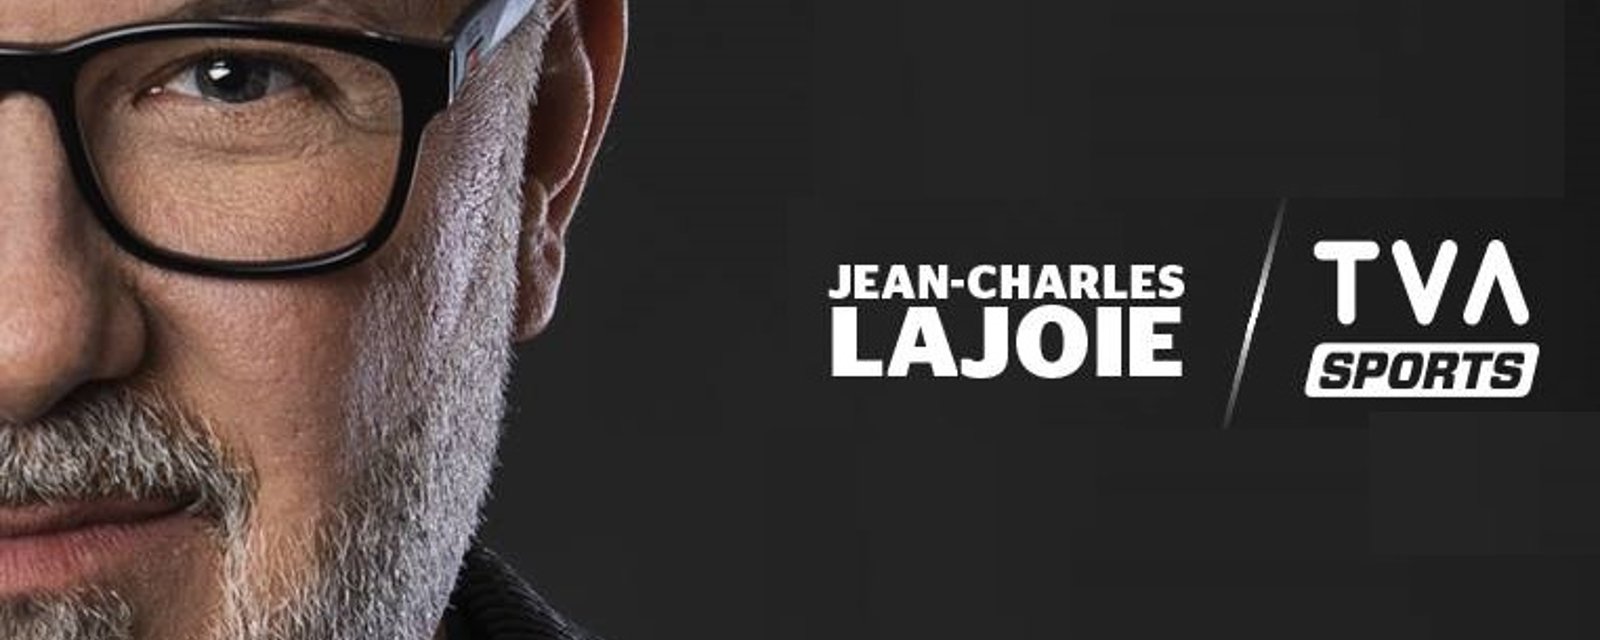 RUMEUR: Le poste de Jean-Charles Lajoie à TVA Sports serait aussi menacé